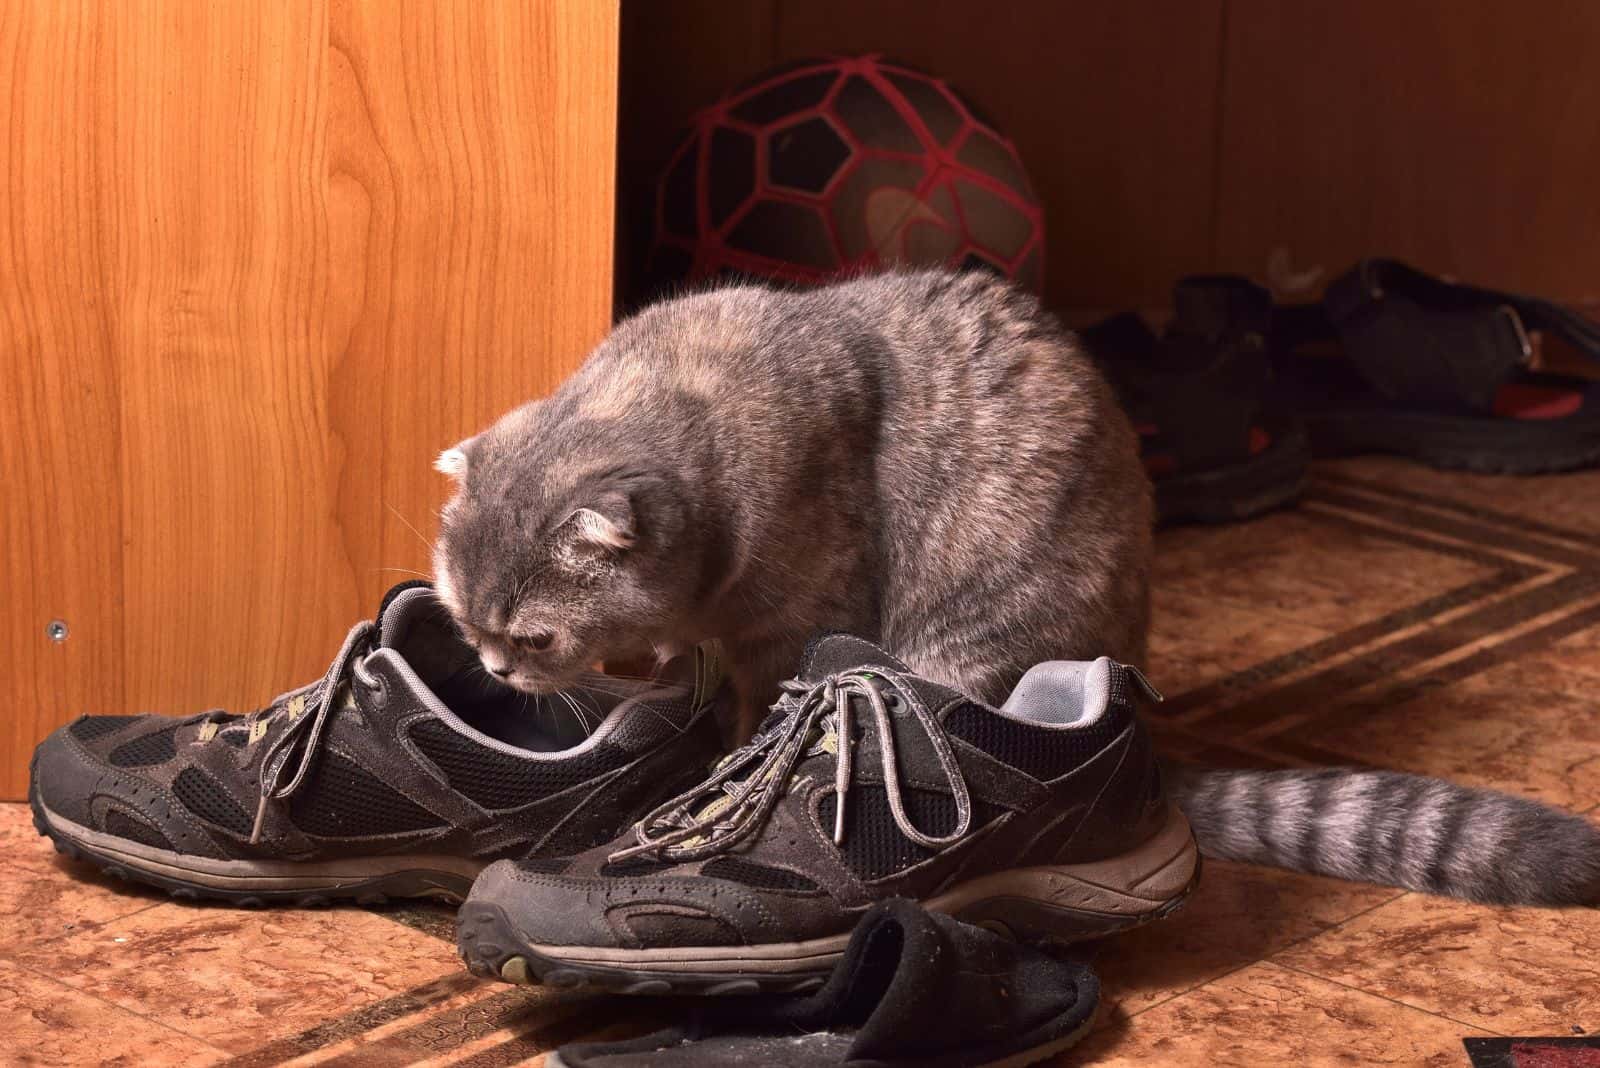 cat sniffs the shoes